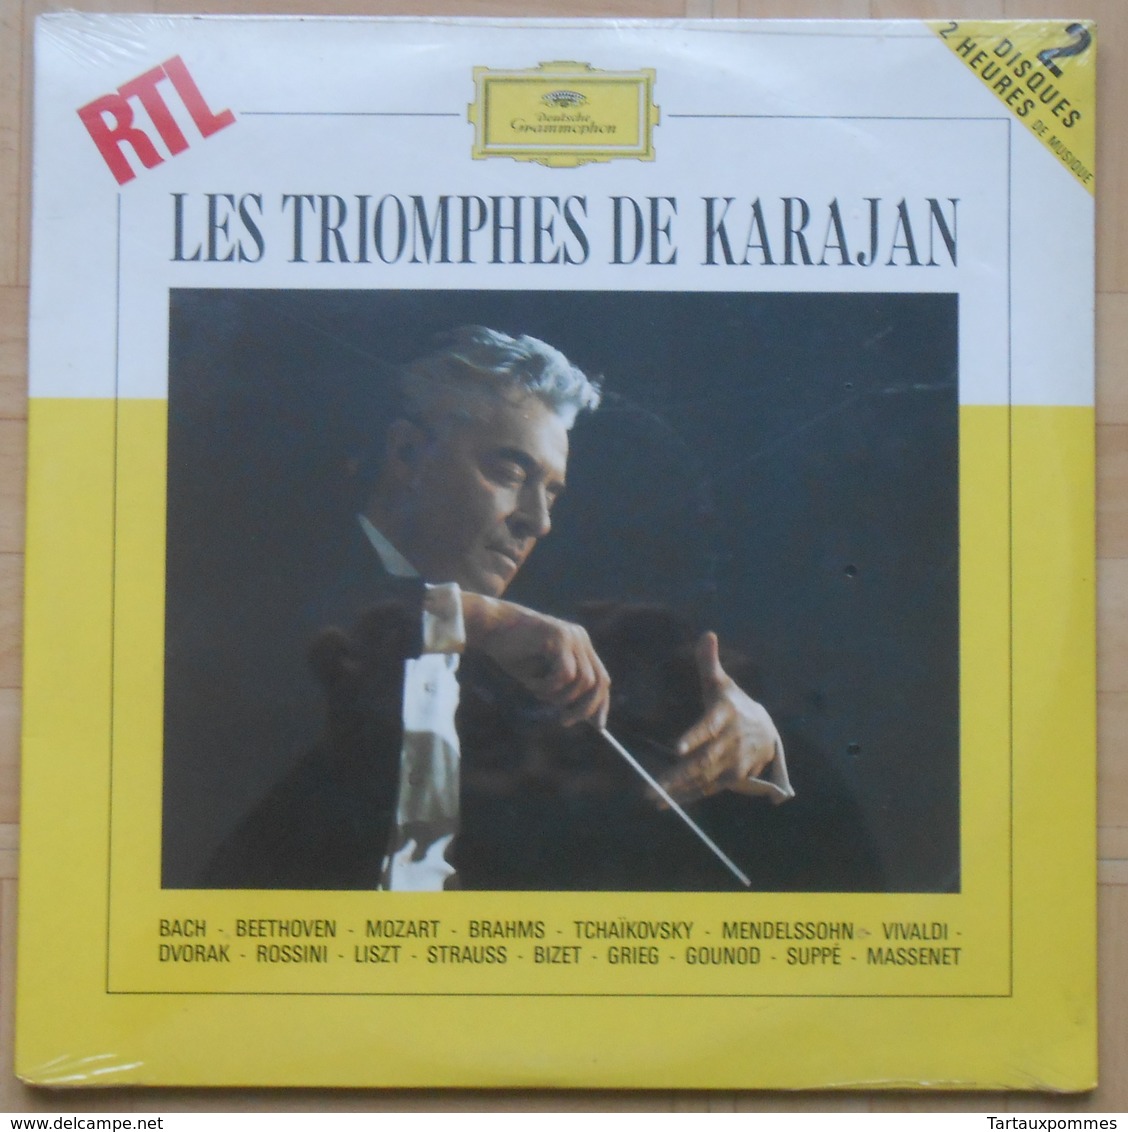 Les Triomphes De KARAJAN - Double Album 33T NEUF SOUS BLISTER - Classical